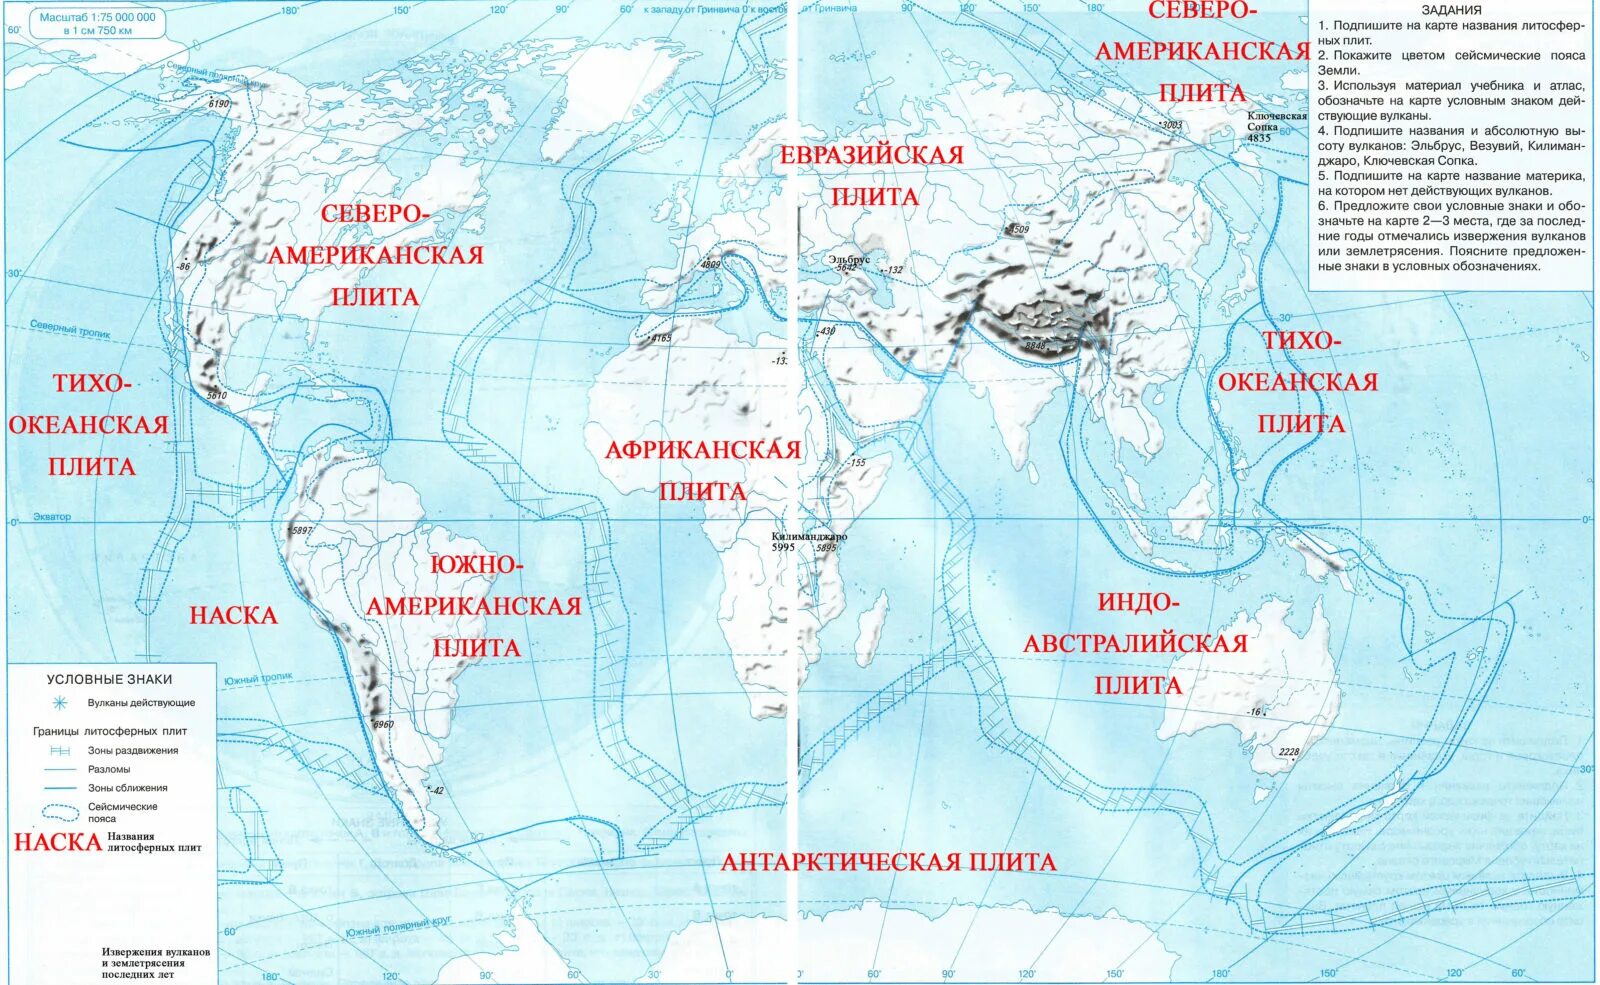 Контурная карта по географии 6 класс литосфера стр 12-13. Литосфера 6 класс география контурная карта. Карта литосферных плит и сейсмических поясов земли. География 6 класс контурные карты литосферные плиты. Контурные карты стр 26 7 класс